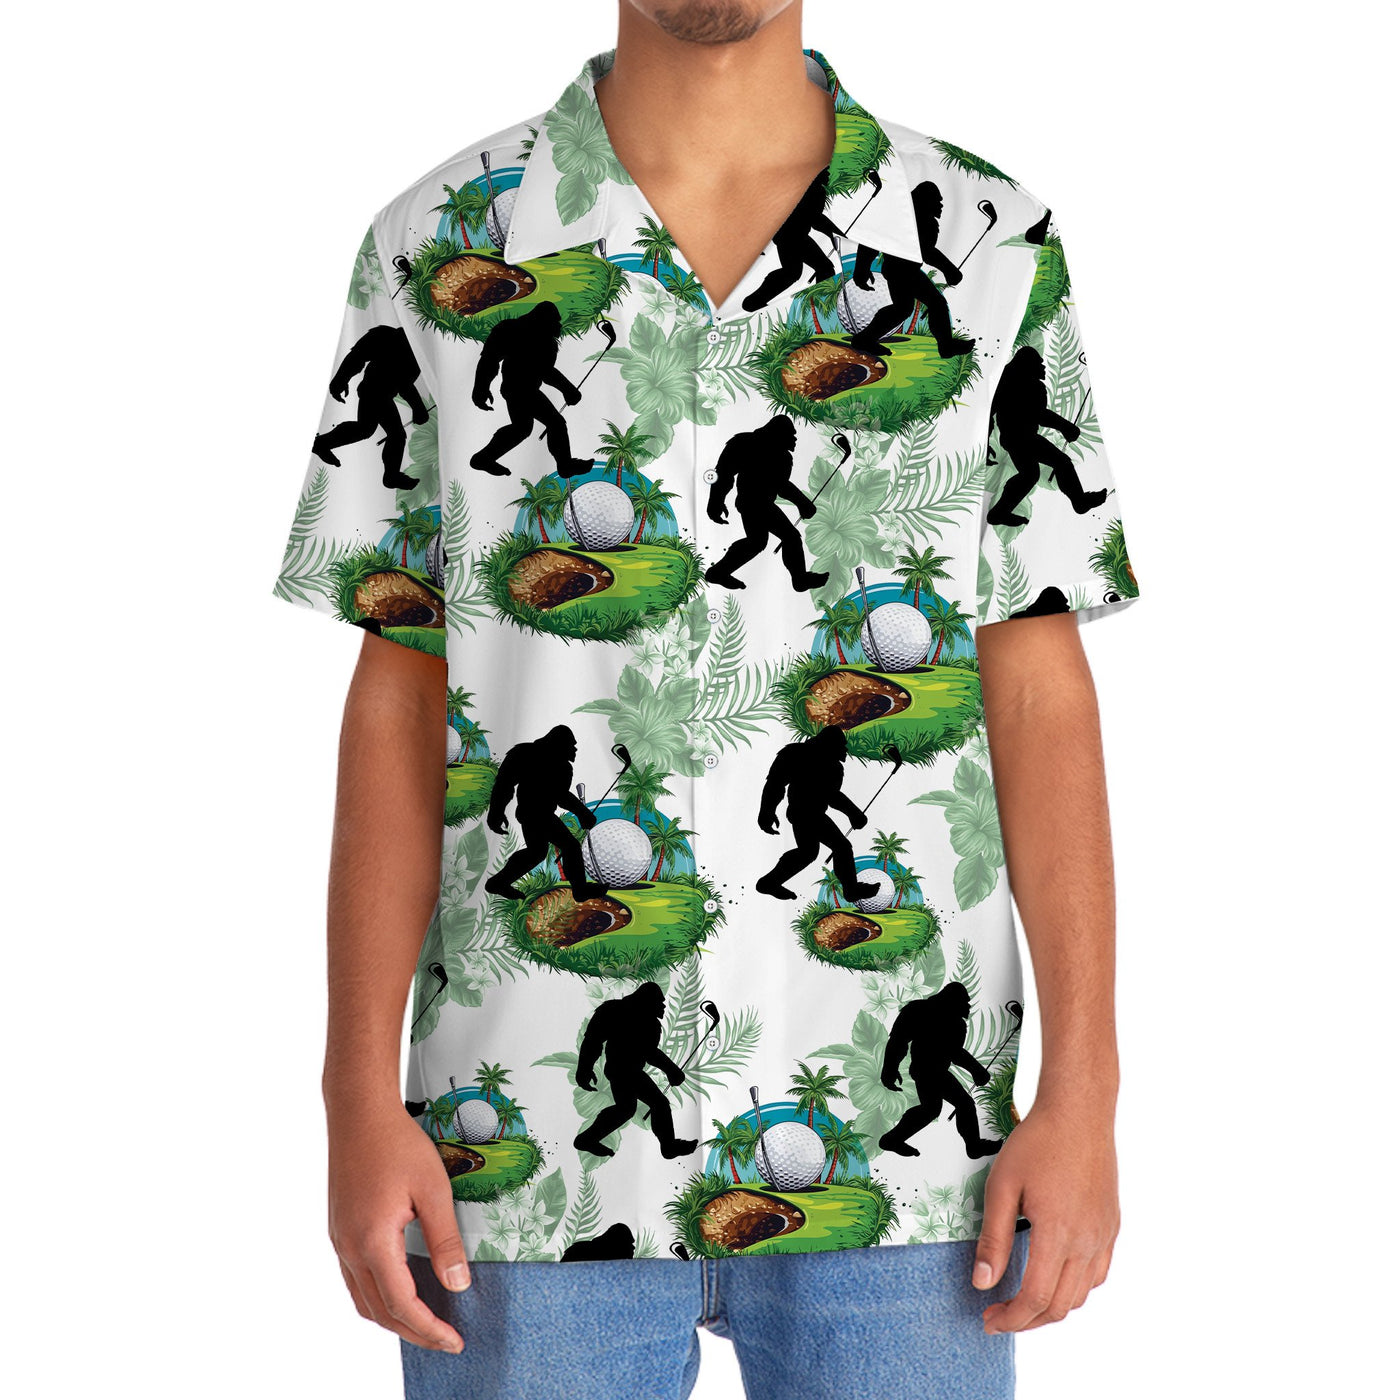 Funny Bigfoot Golf Hawaiian Shirt